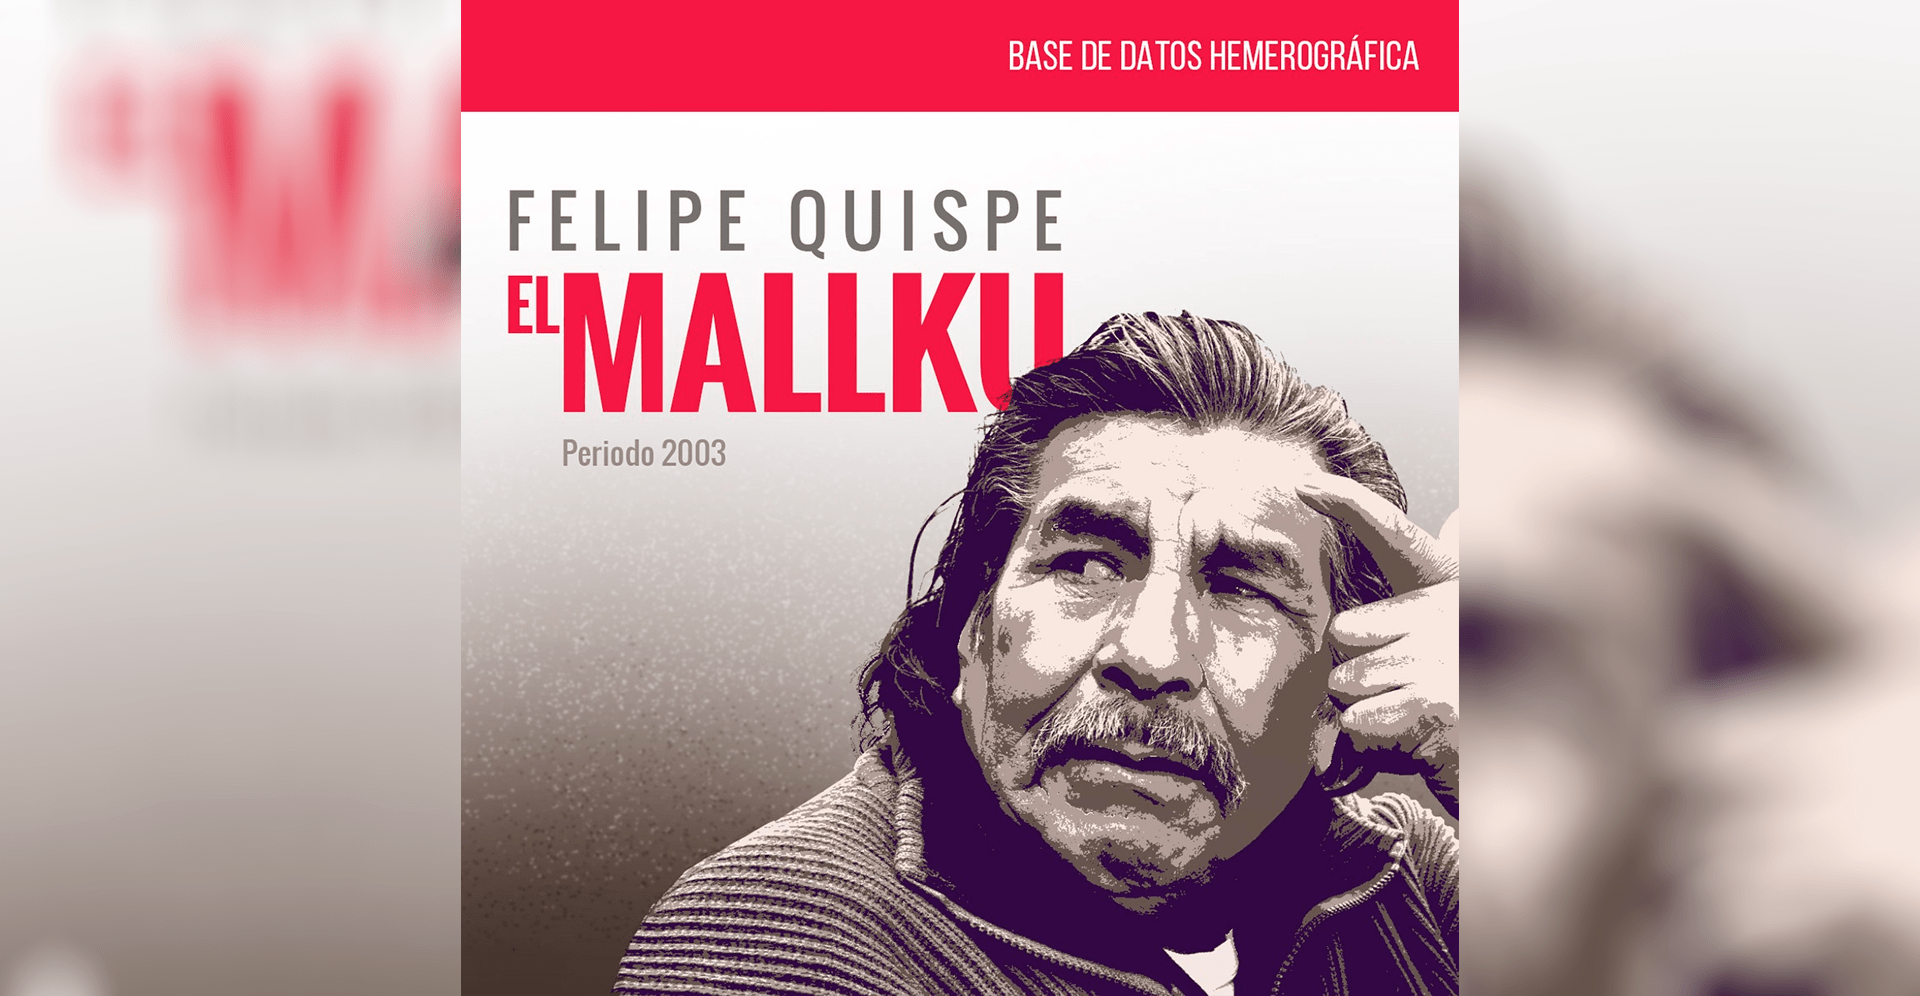 Base de datos Hemerográfica: Felipe Quispe, El Mallku de 2003